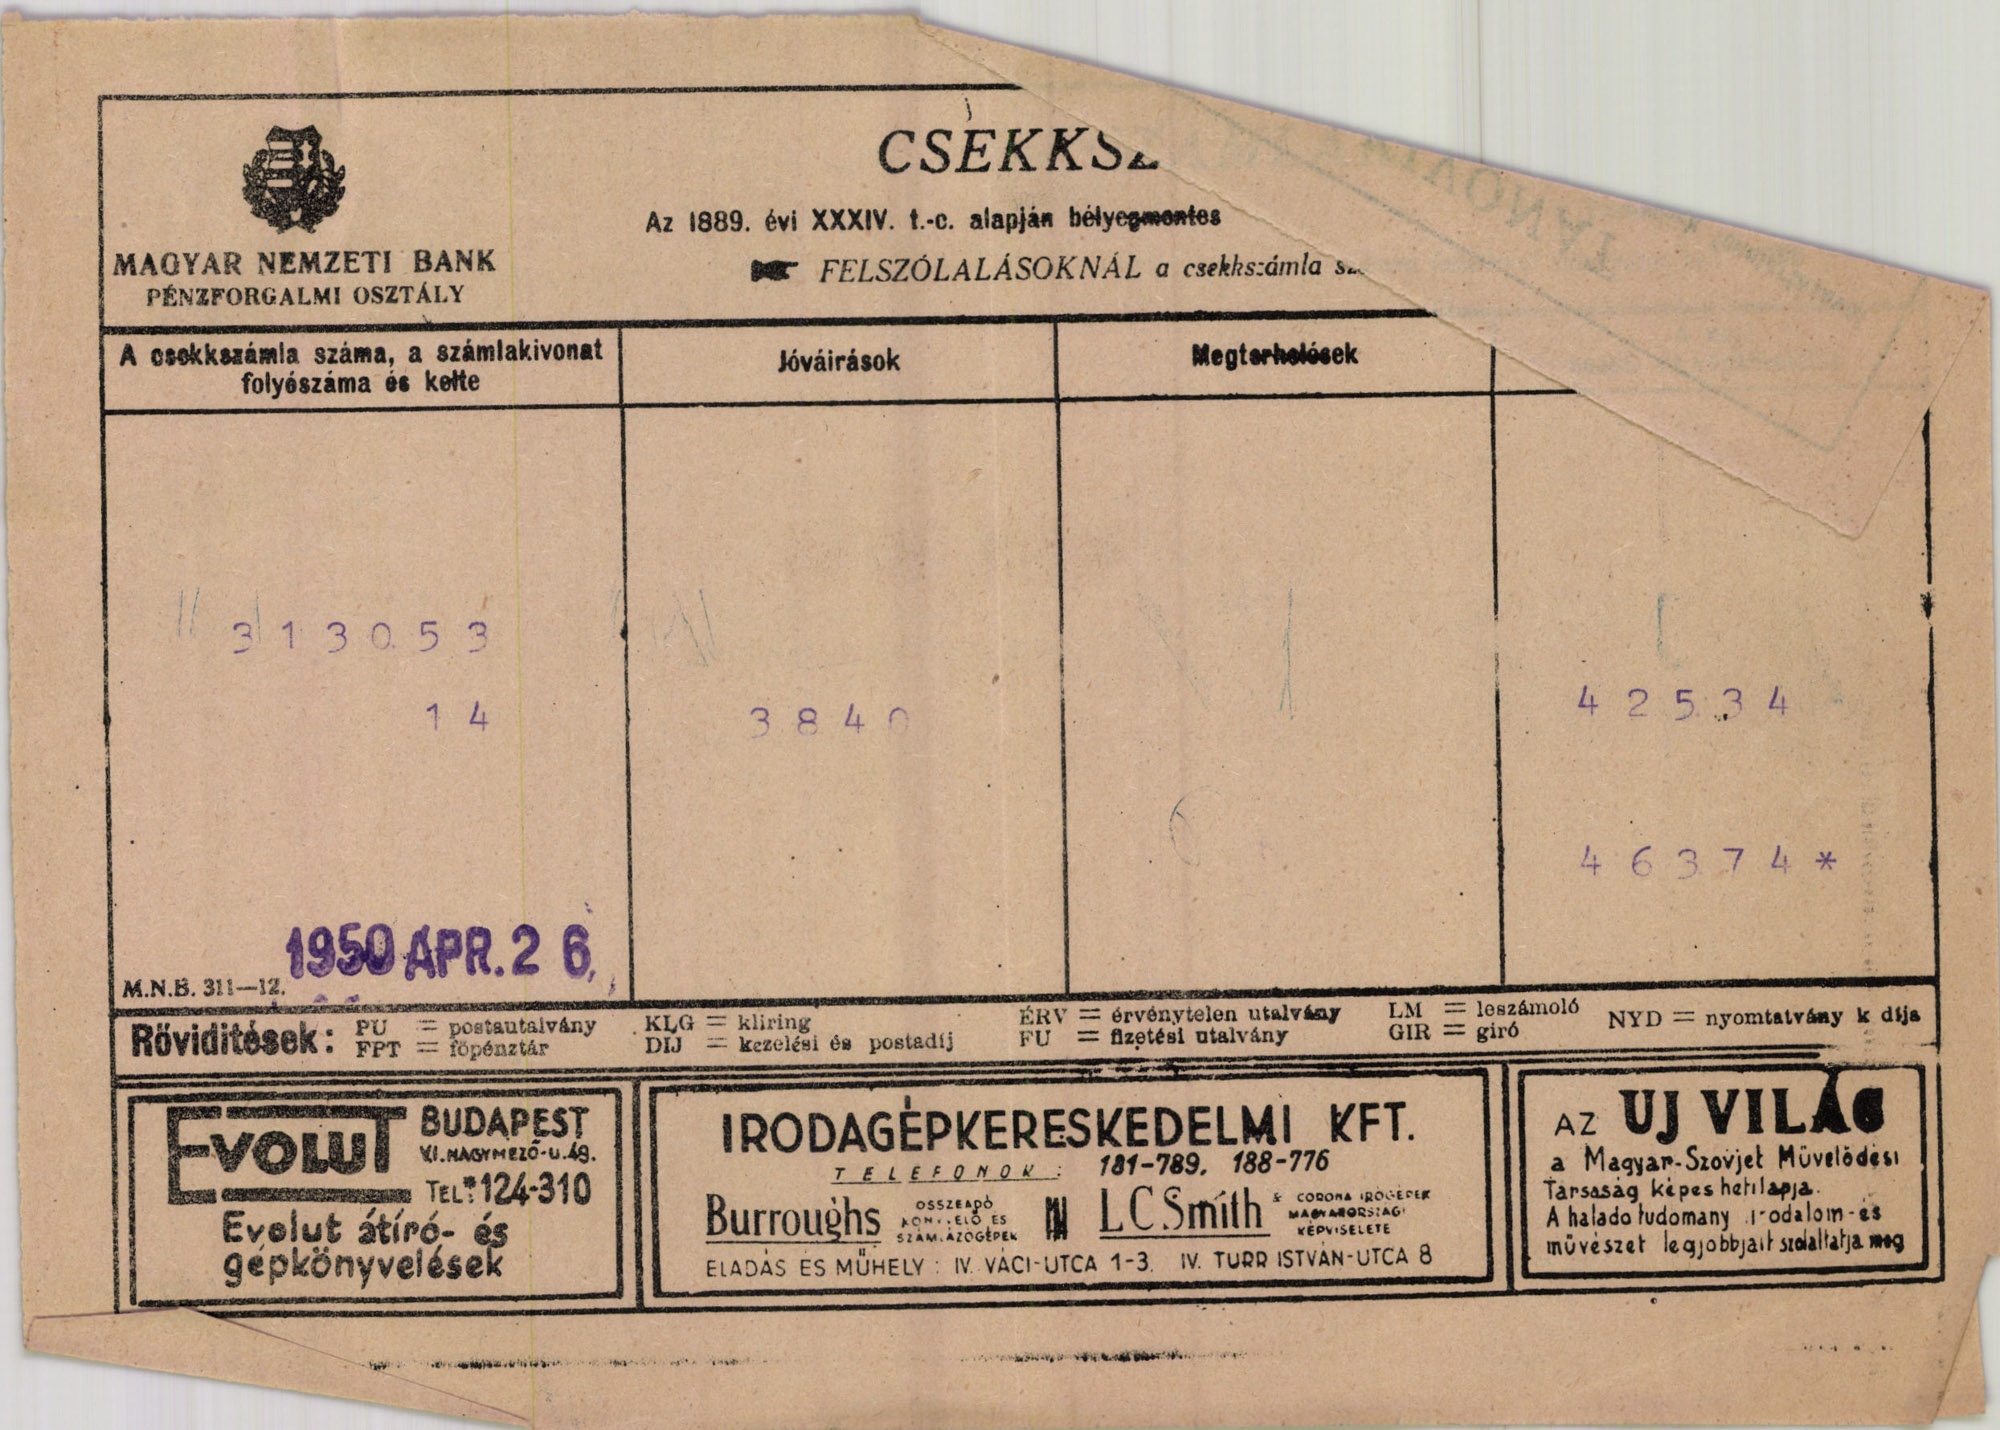 Magyar Nemzeti Bank Pénzforgalmi osztály (Magyar Kereskedelmi és Vendéglátóipari Múzeum CC BY-NC-SA)